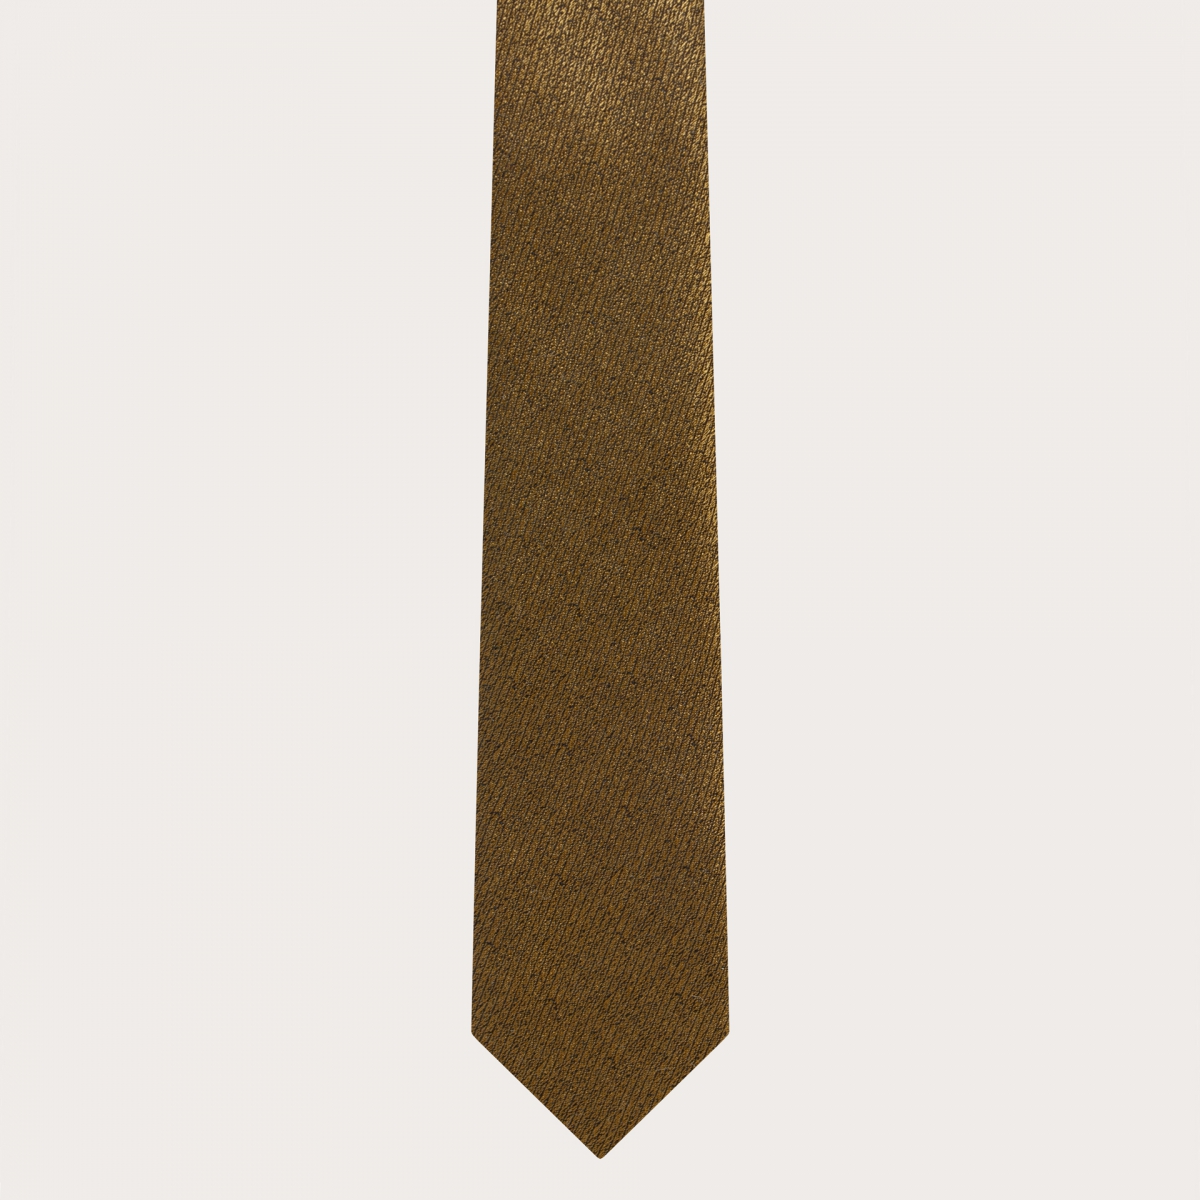 BRUCLE Ensemble de cérémonie complet en soie dorée irisée, bretelles, cravate et pochette